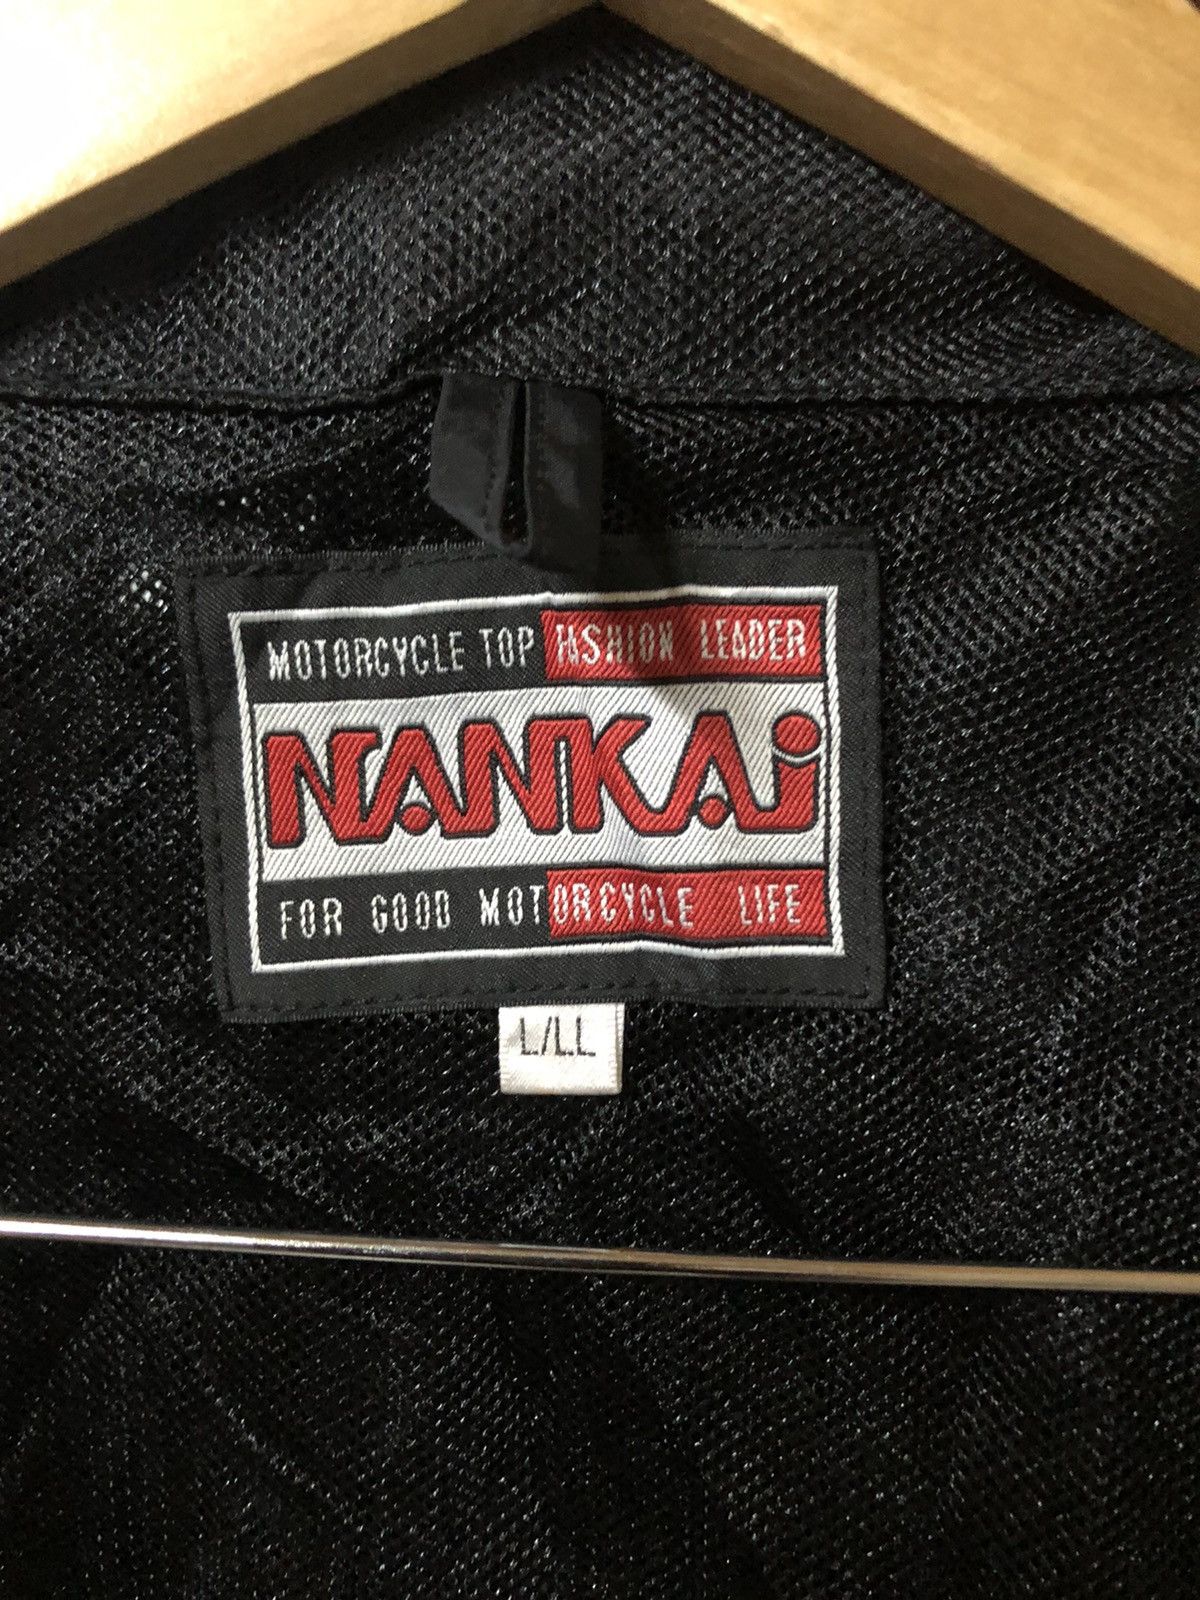 Sports Specialties - Nankai Motorcycle Hyper Rain Gear Long Jacket - 11